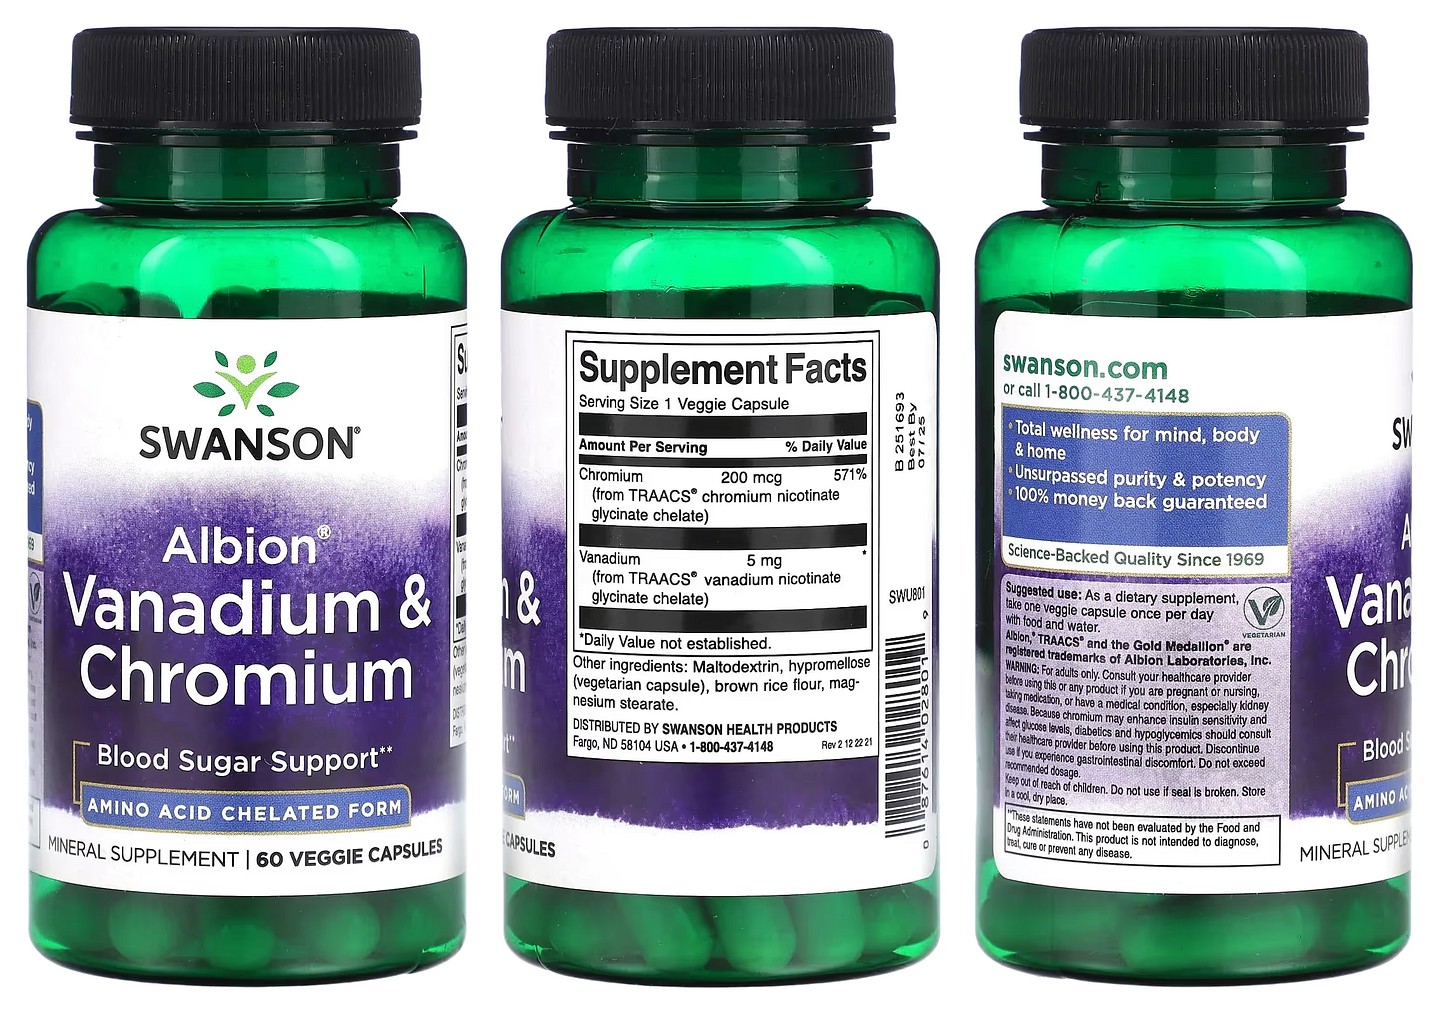 Swanson, Albion Vanadium & Chromium packaging